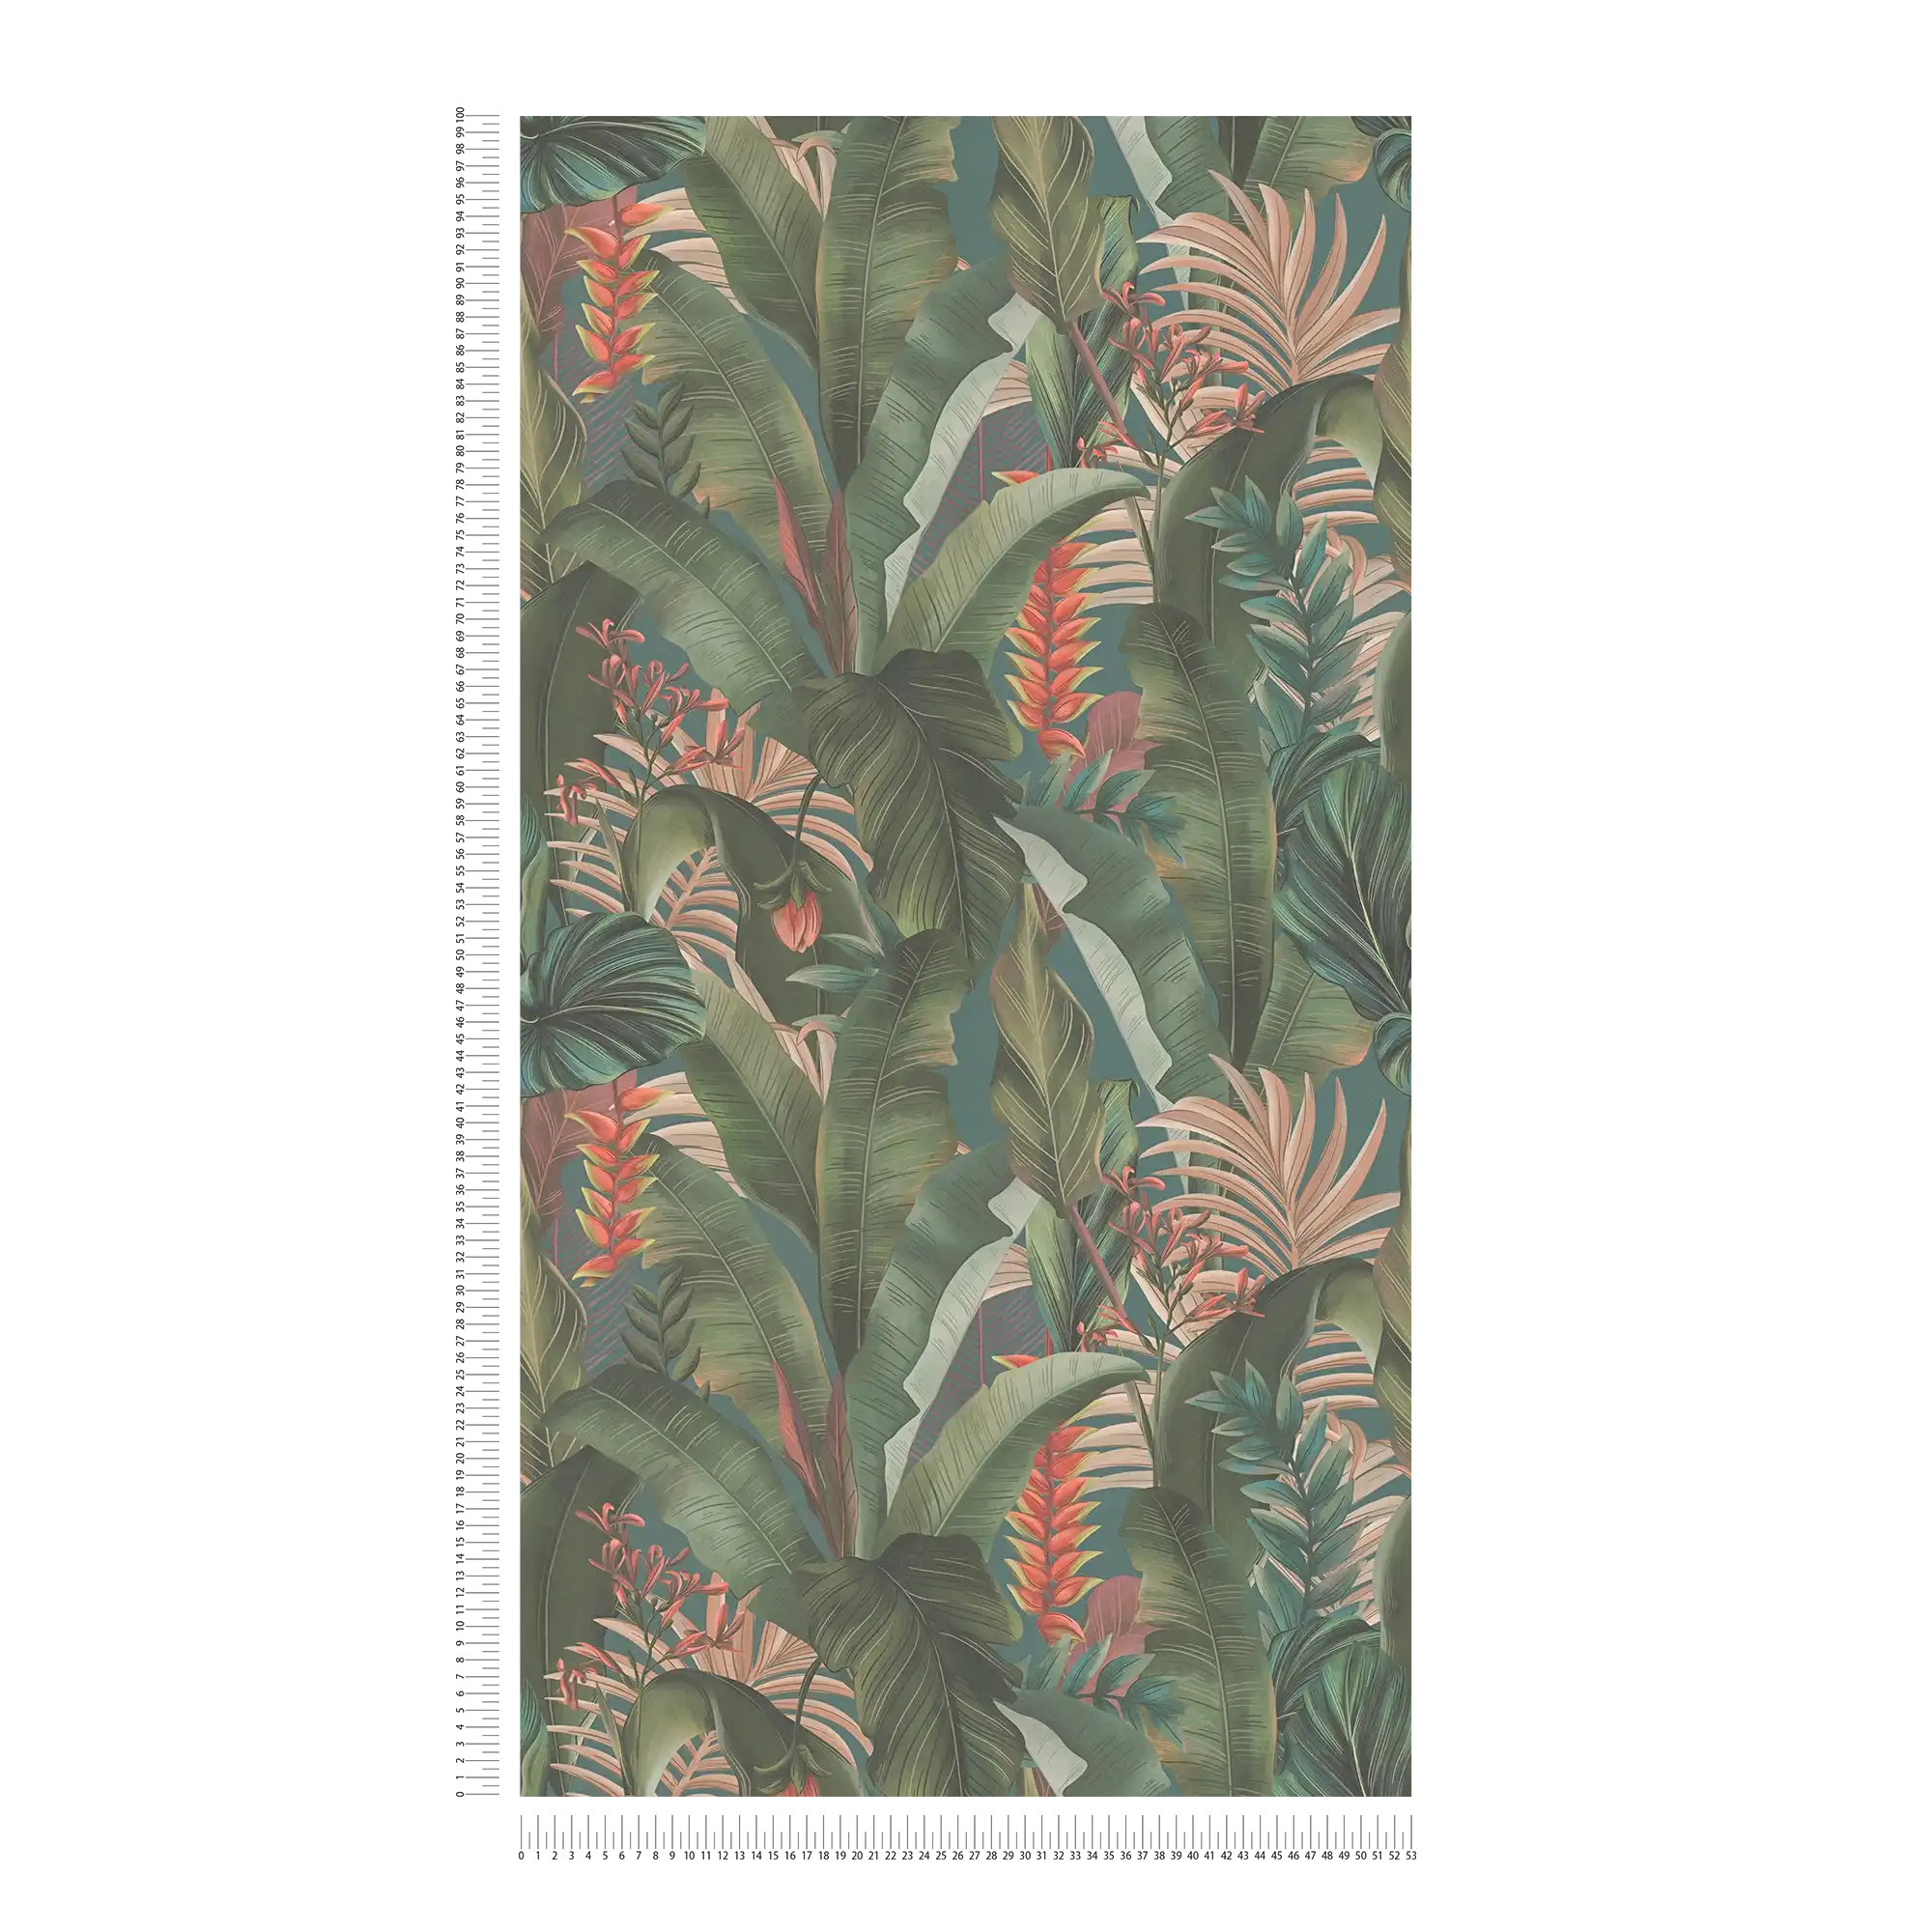             papier peint en papier jungle floral avec feuilles de palmier & fleurs structuré mat - bleu, pétrole, vert
        